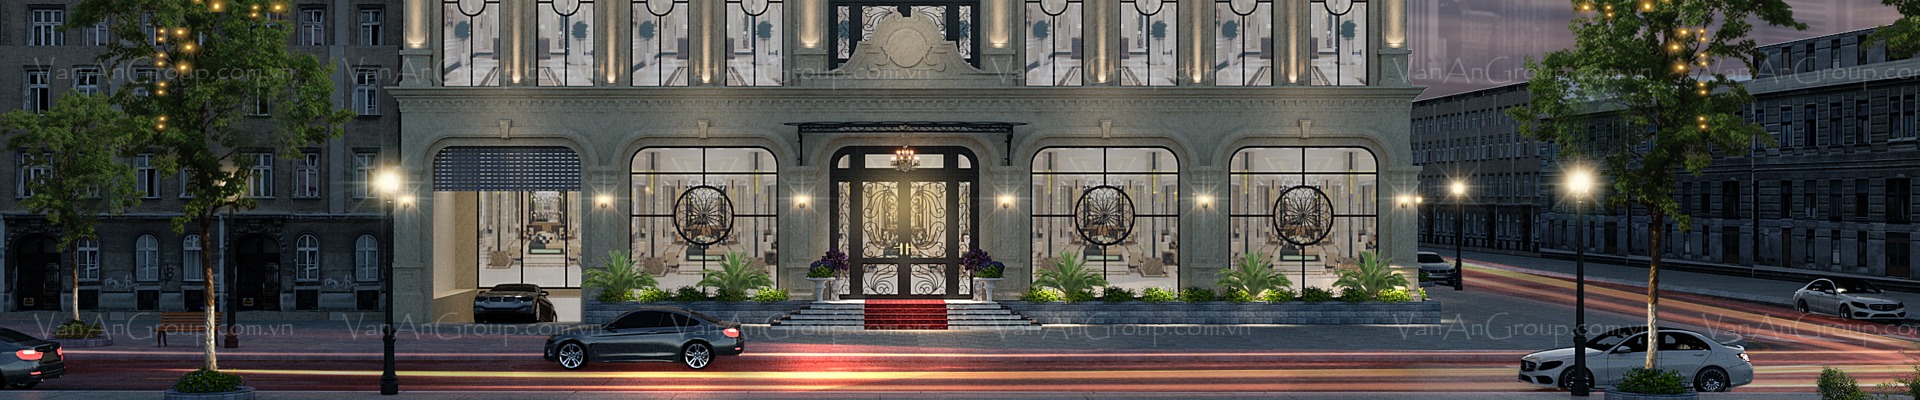 Vạn An Group - Thiết kế và thi công khách sạn chuyên nghiệp